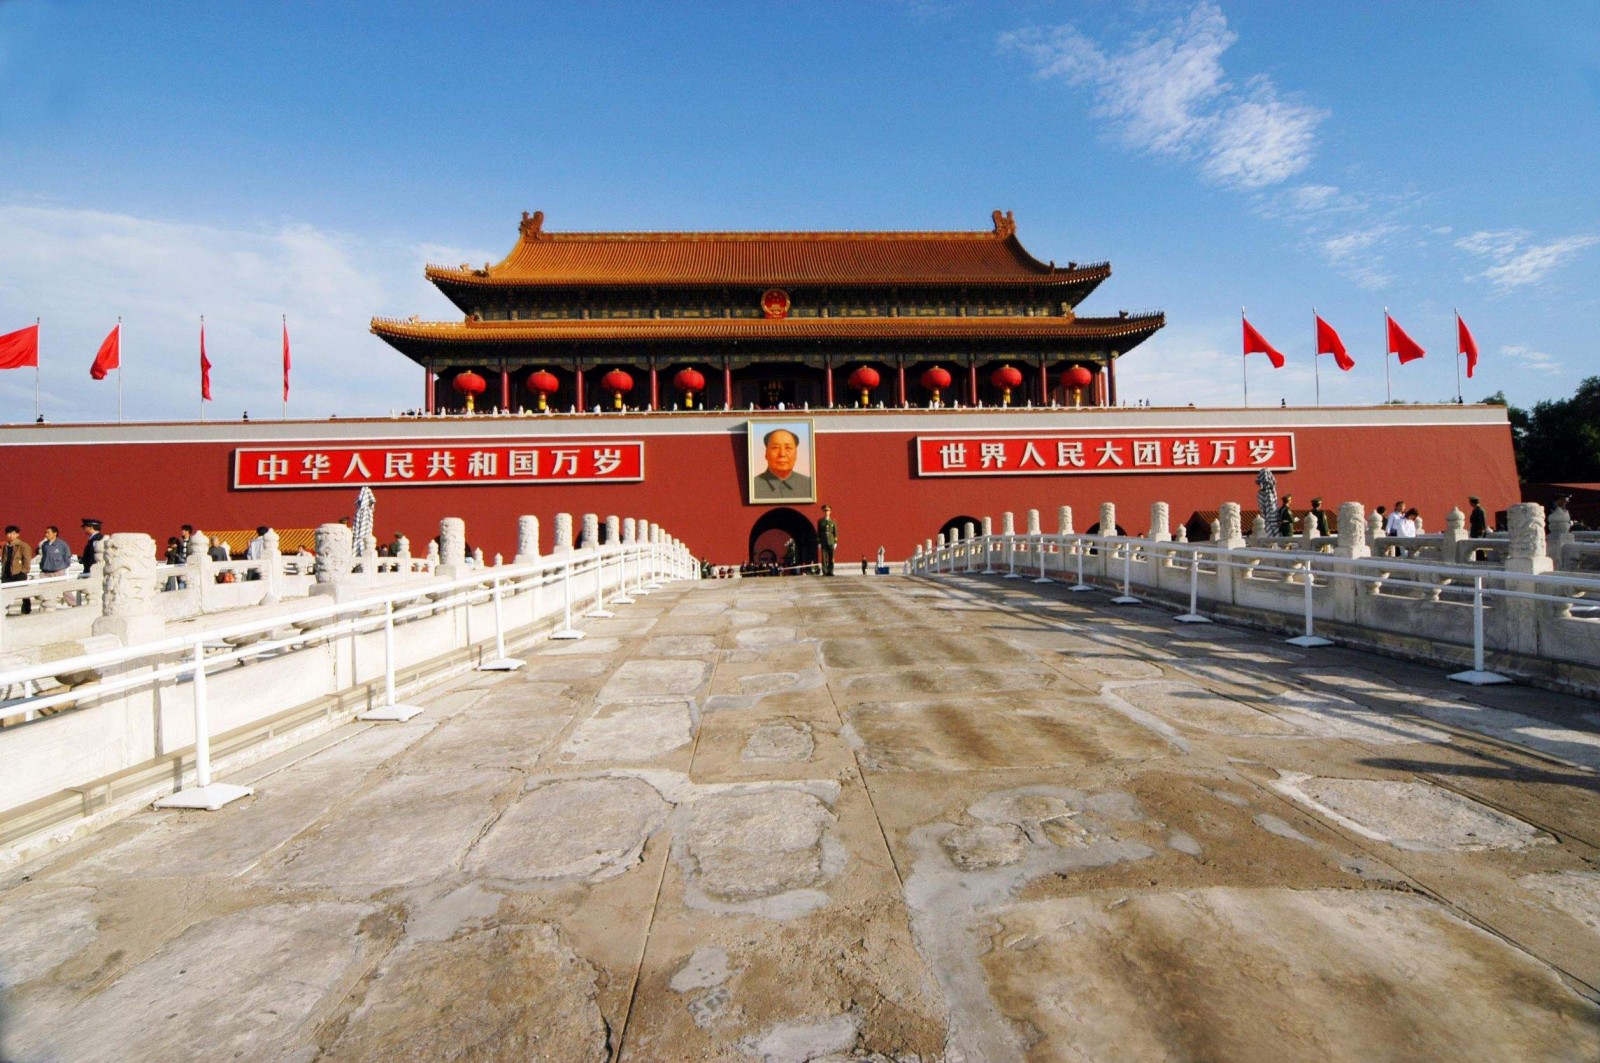 площадь Пекина – Тяньаньмэнь